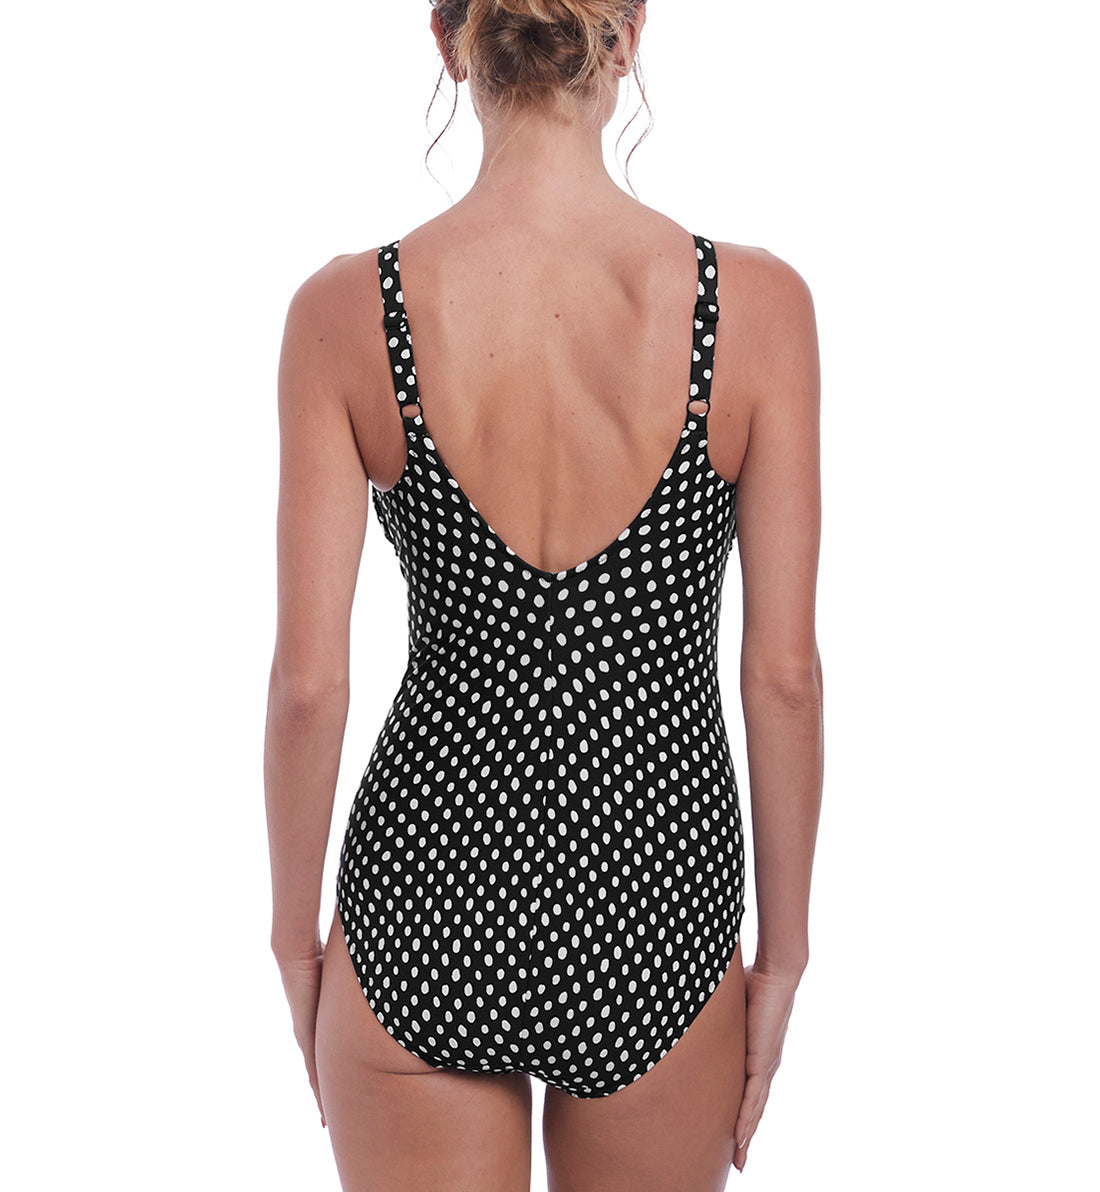 Fantasie Santa Monica Twist Front Underwire Swimsuit (6728),32E,Black/White - Black/White,32E